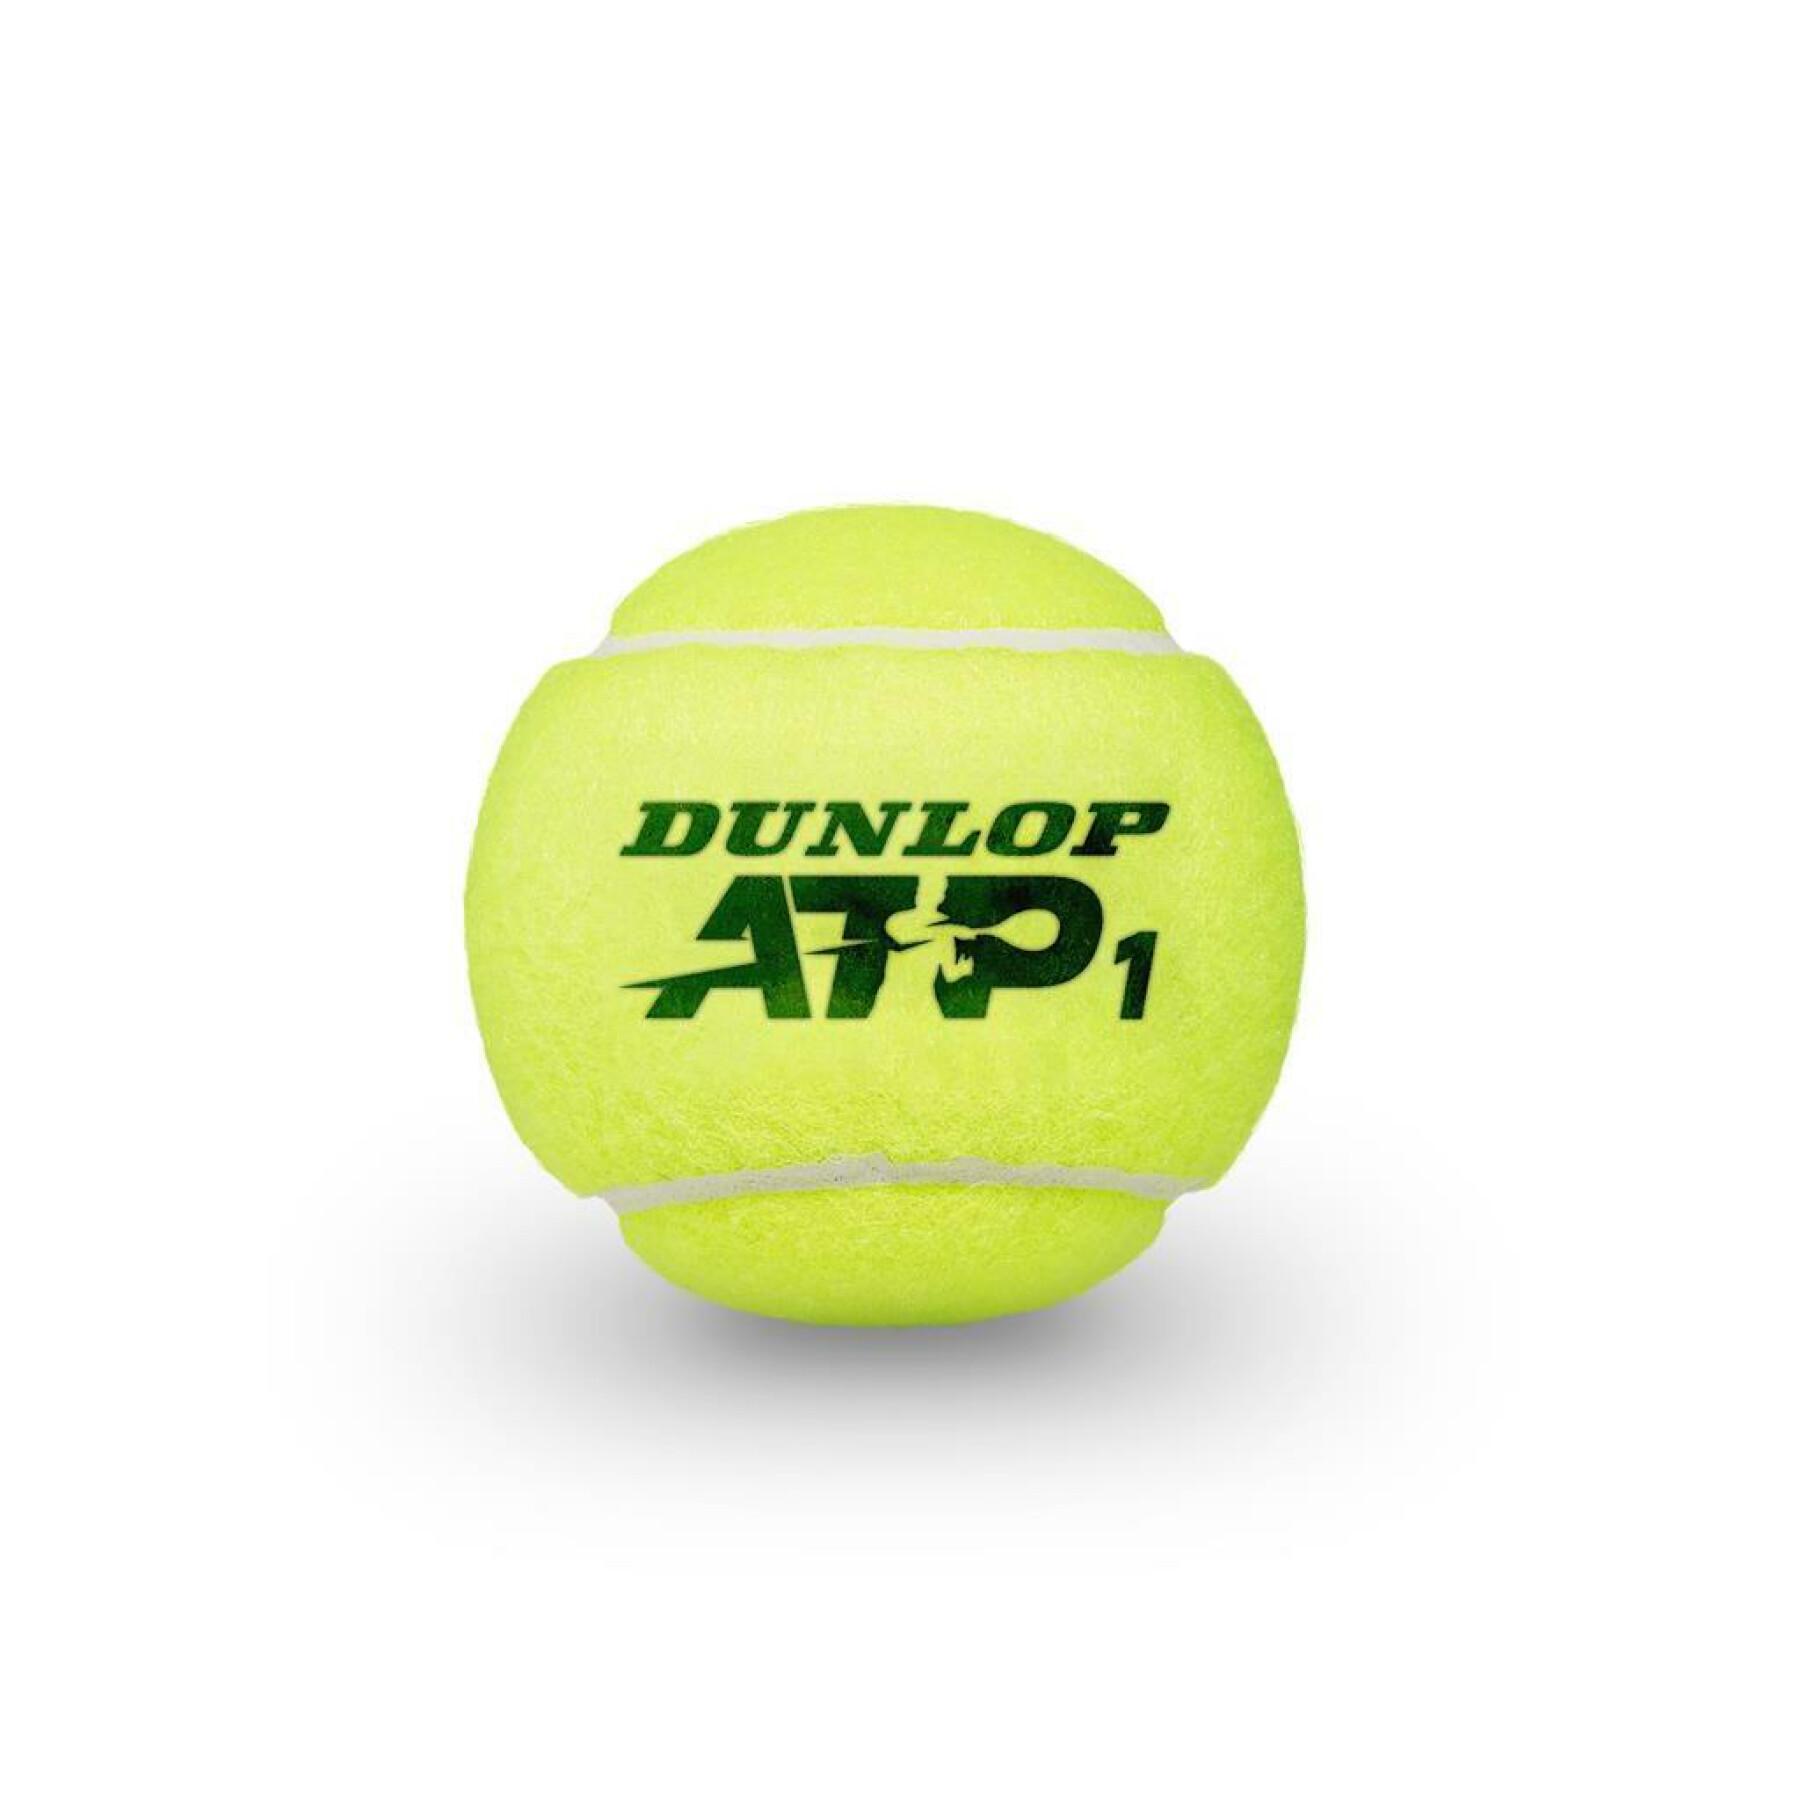 Zestaw 3 piłek tenisowych Dunlop atp